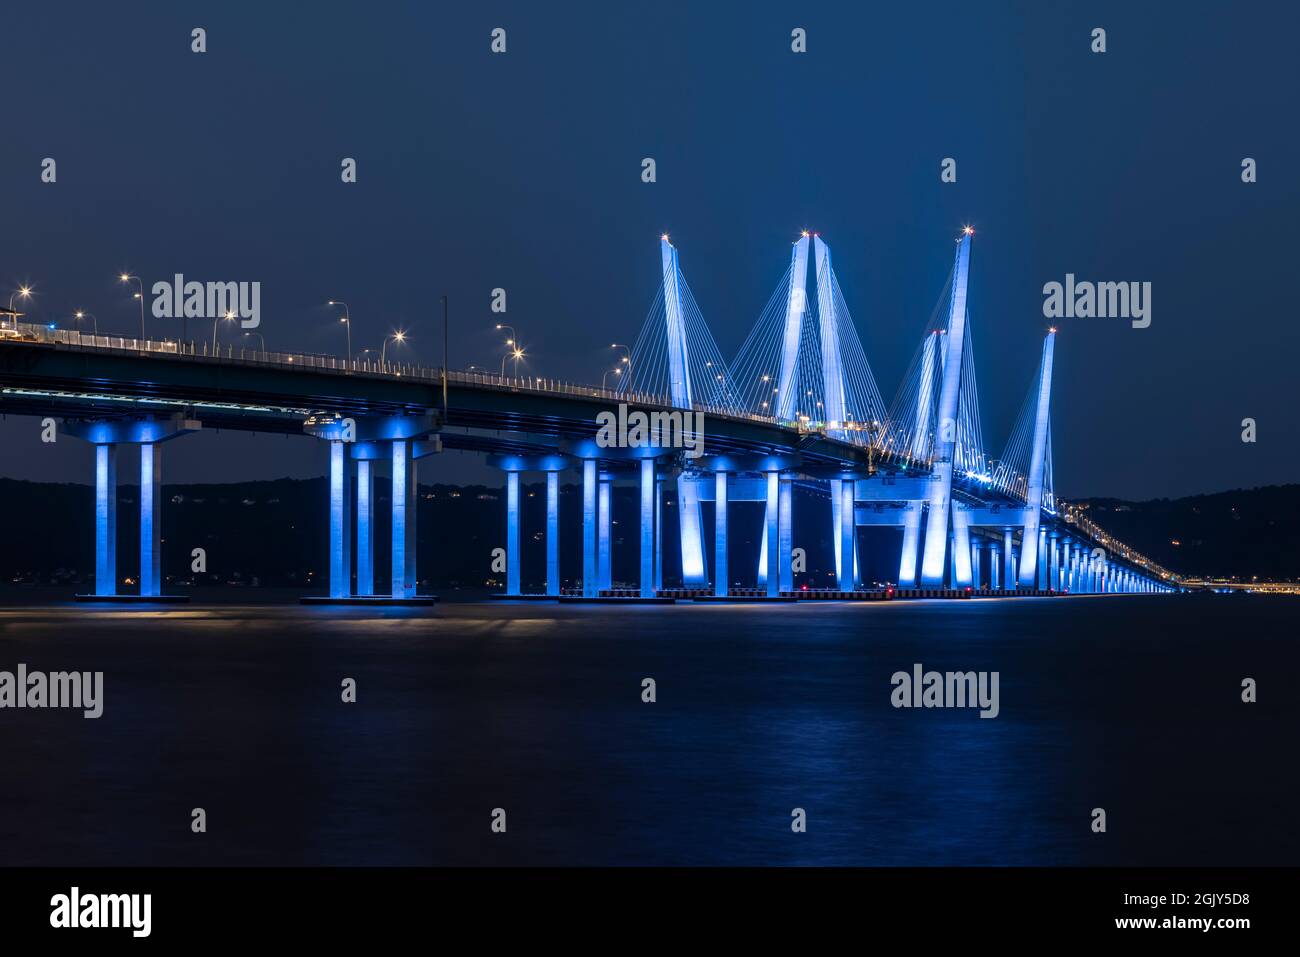 El Puente del Gobernador Mario M. Cuomo se iluminó en azul en observación del 20th aniversario de los atentados terroristas de 9/11. Foto de stock